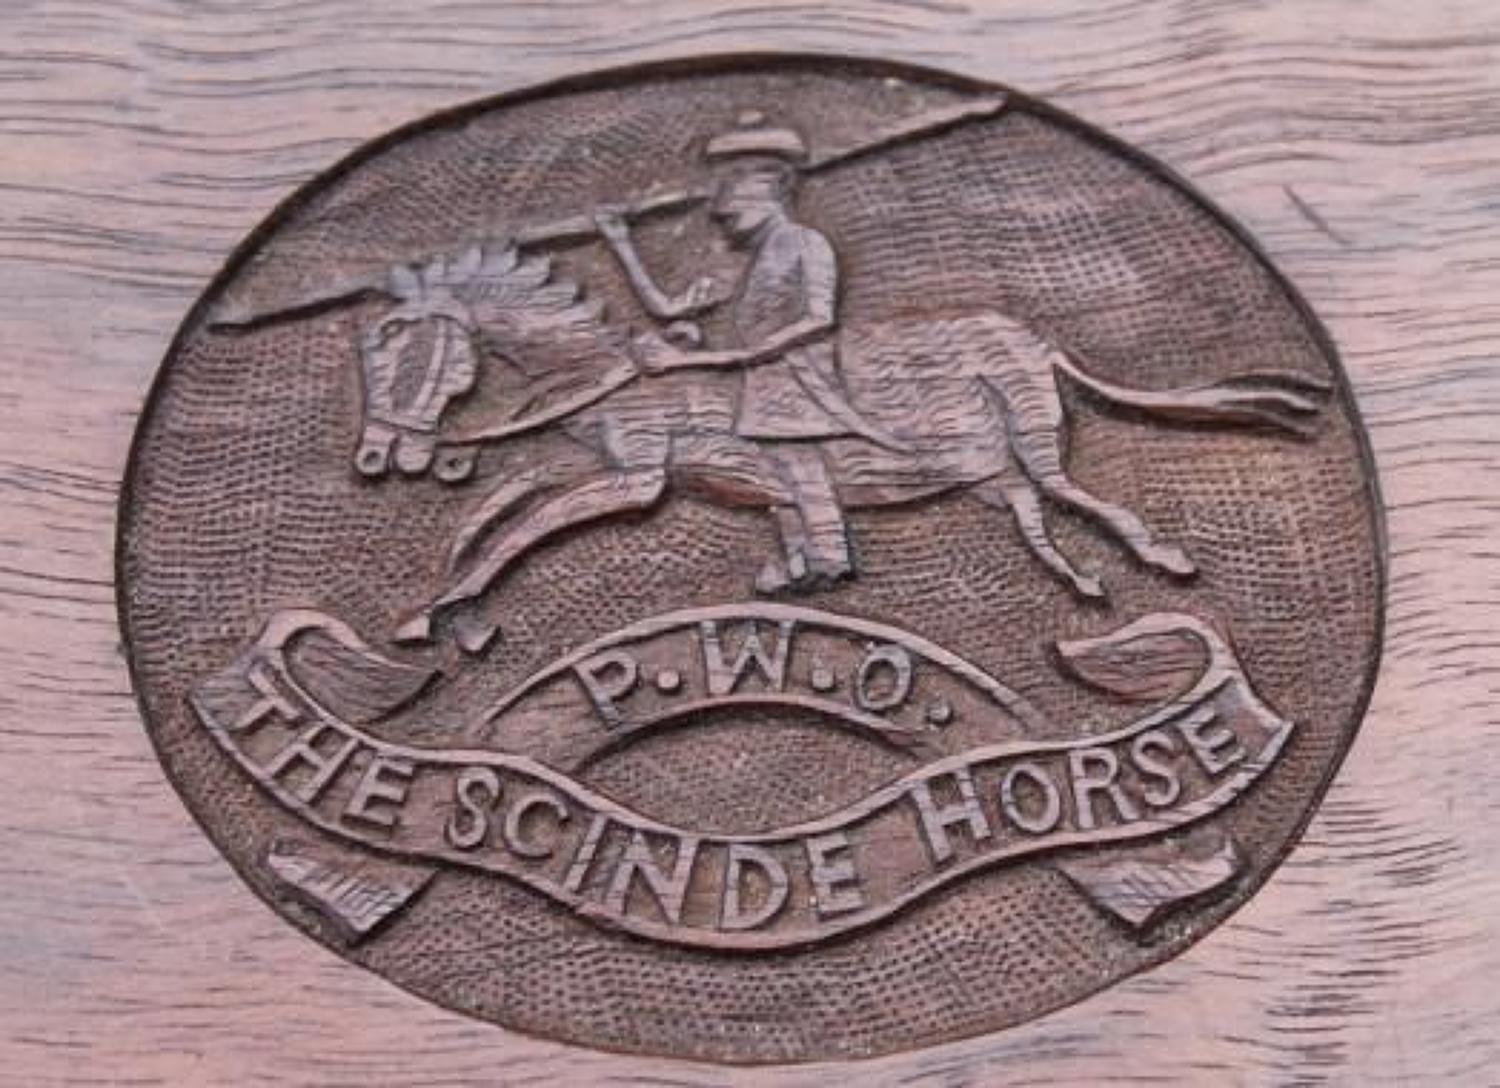 Scinde Horse Table Casket